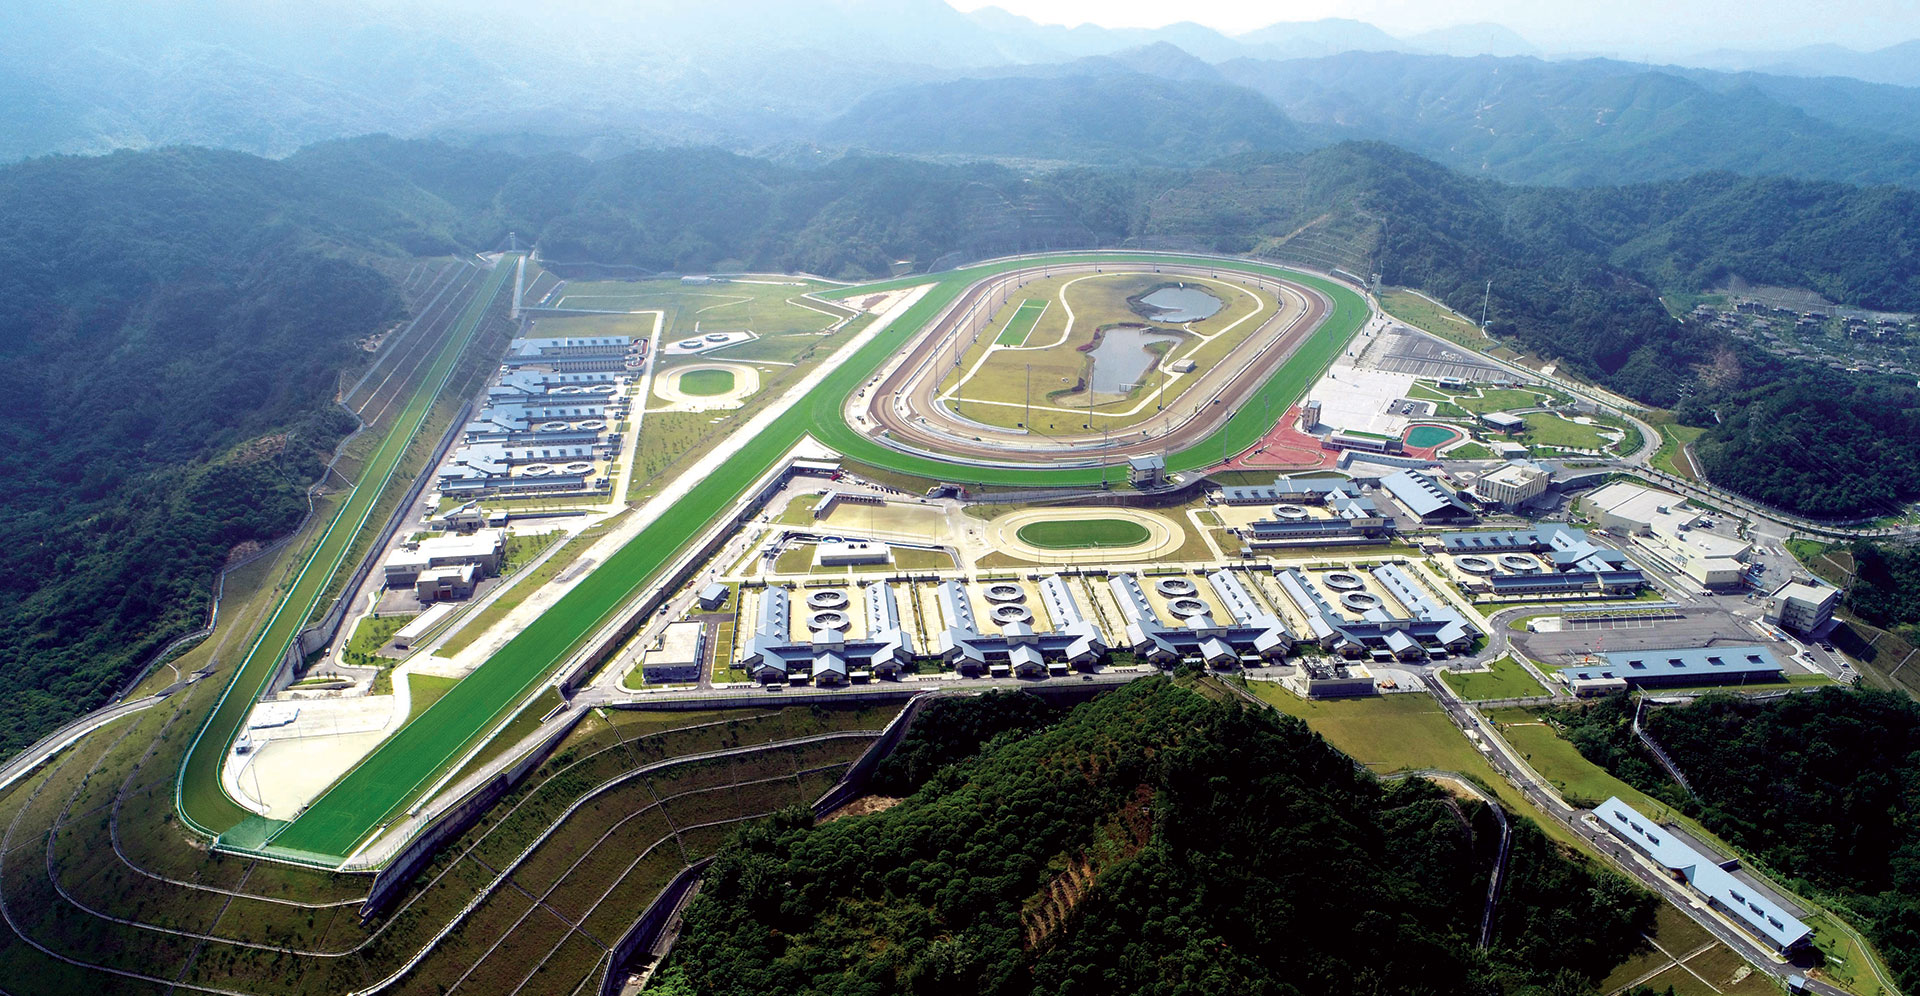 Spread over 150 hectares, Conghua Racecourse is a critical part of Hong Kong’s world-class horse racing.